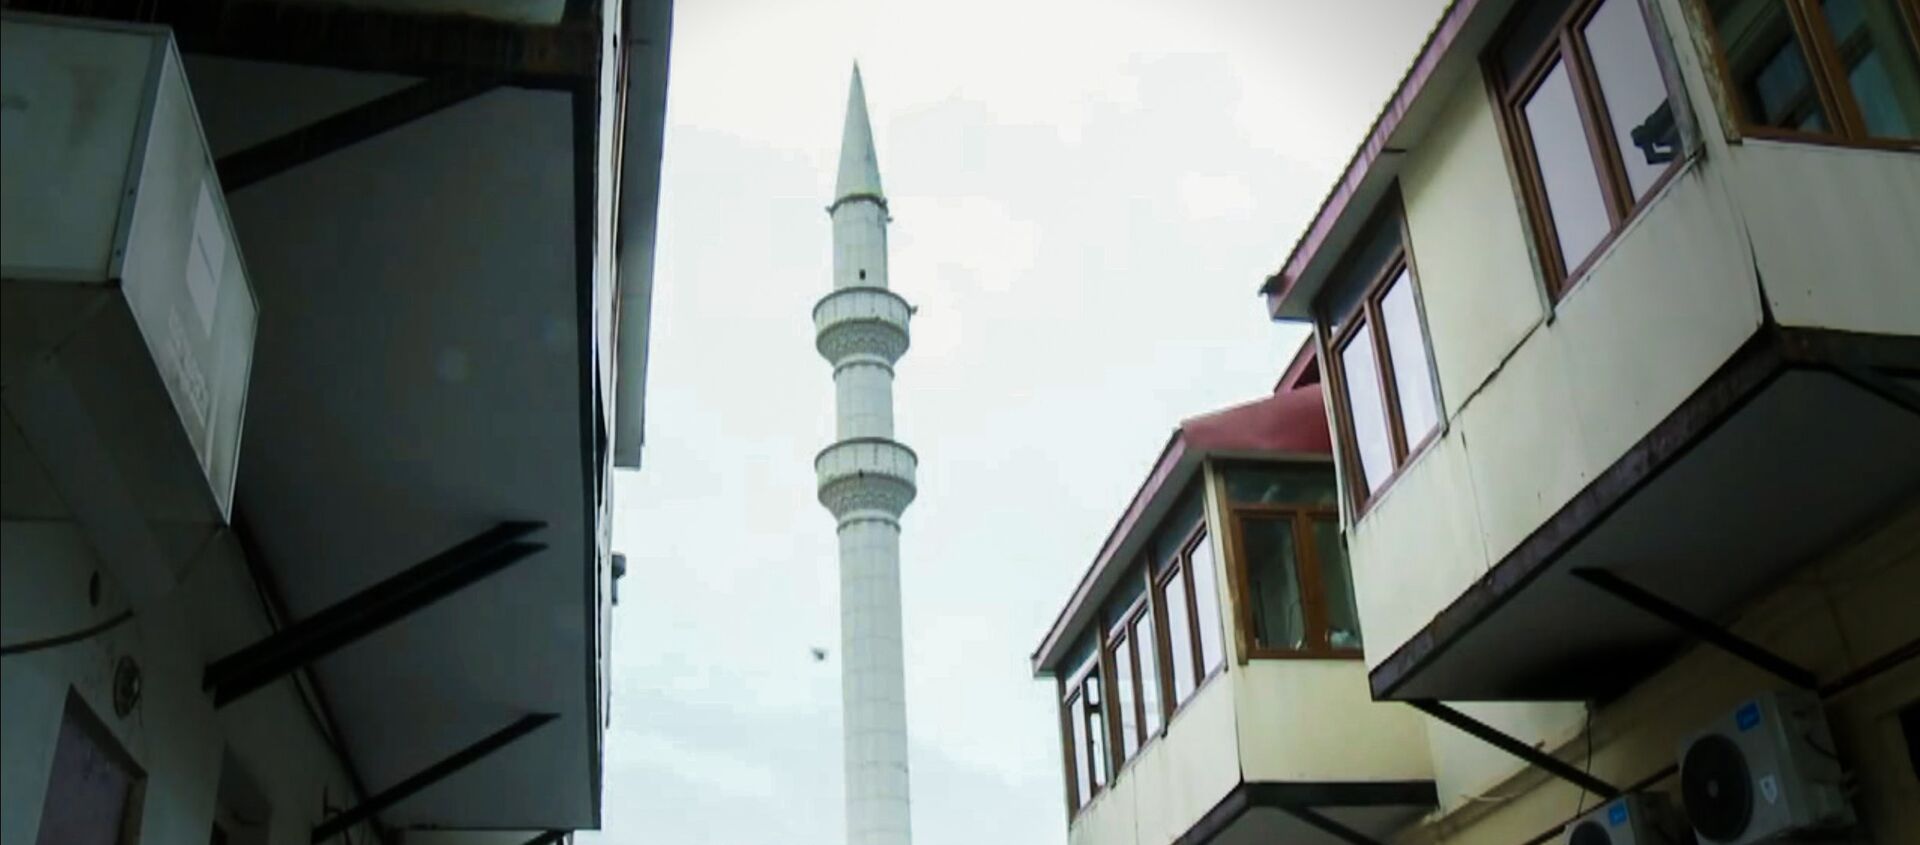 Курбан-Байрам в Батуми: как мусульмане в Аджарии отмечали праздник - Sputnik Грузия, 1920, 31.07.2020